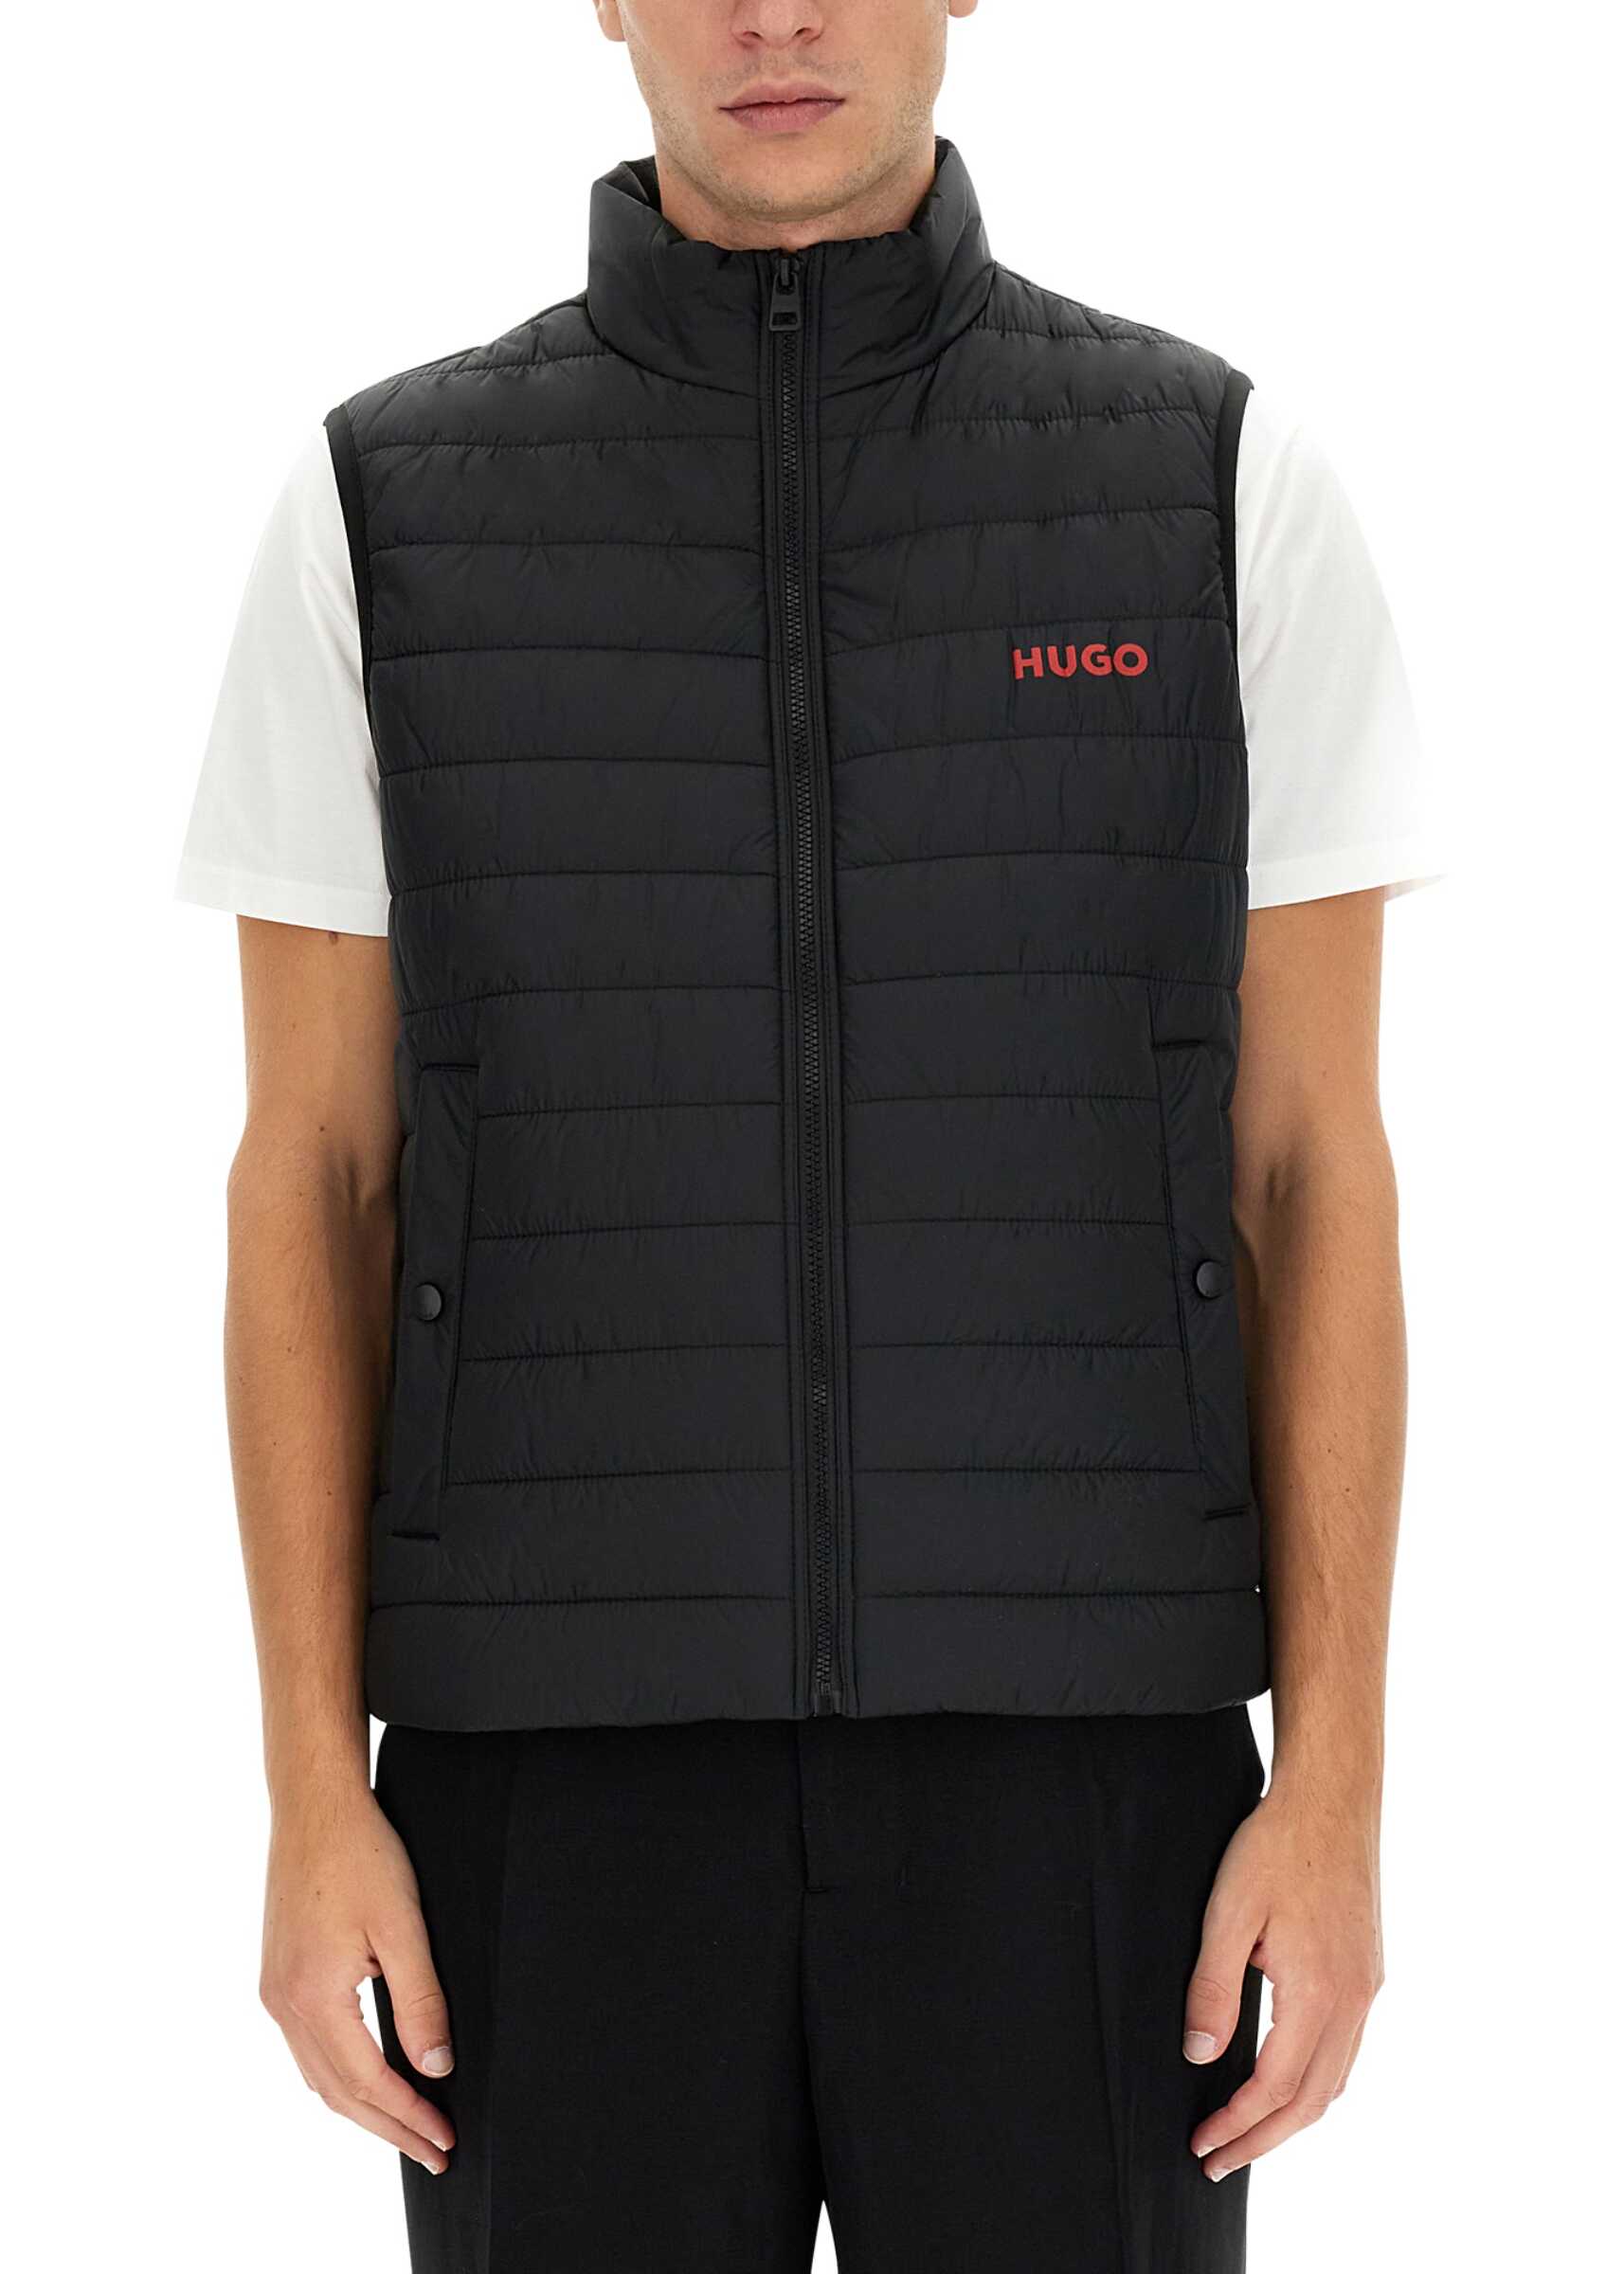 BOSS Hugo Boss Logo Print Vest BLACK